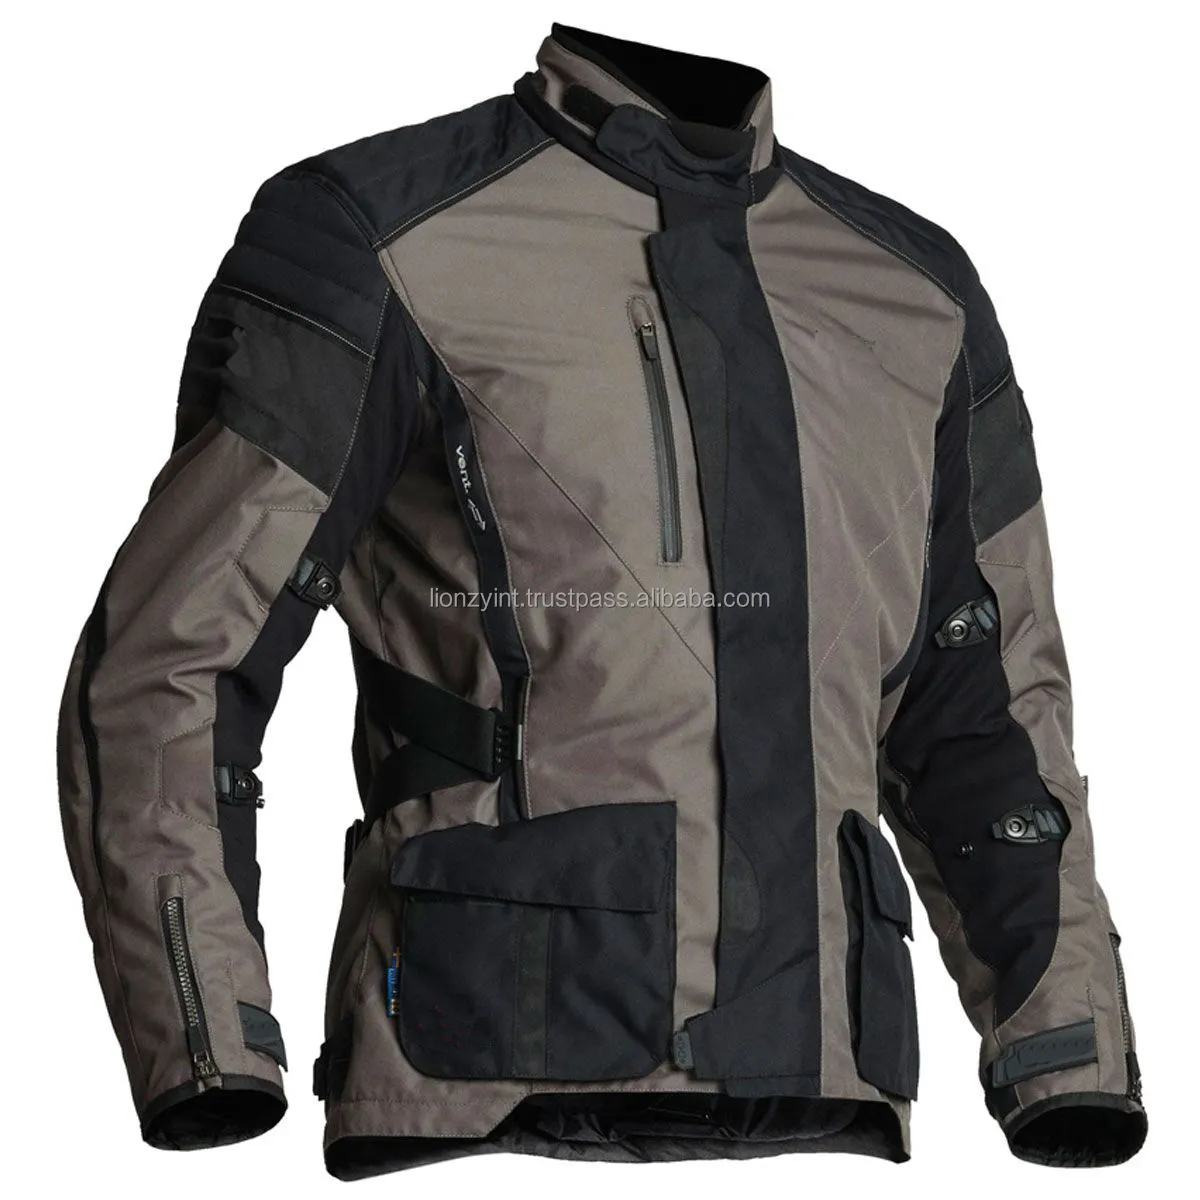 Высококачественная текстильная куртка Lionzy International для мотоциклов, КОРДУРА, с сертификатом Ce, защитная одежда для мотоциклов и автогонок